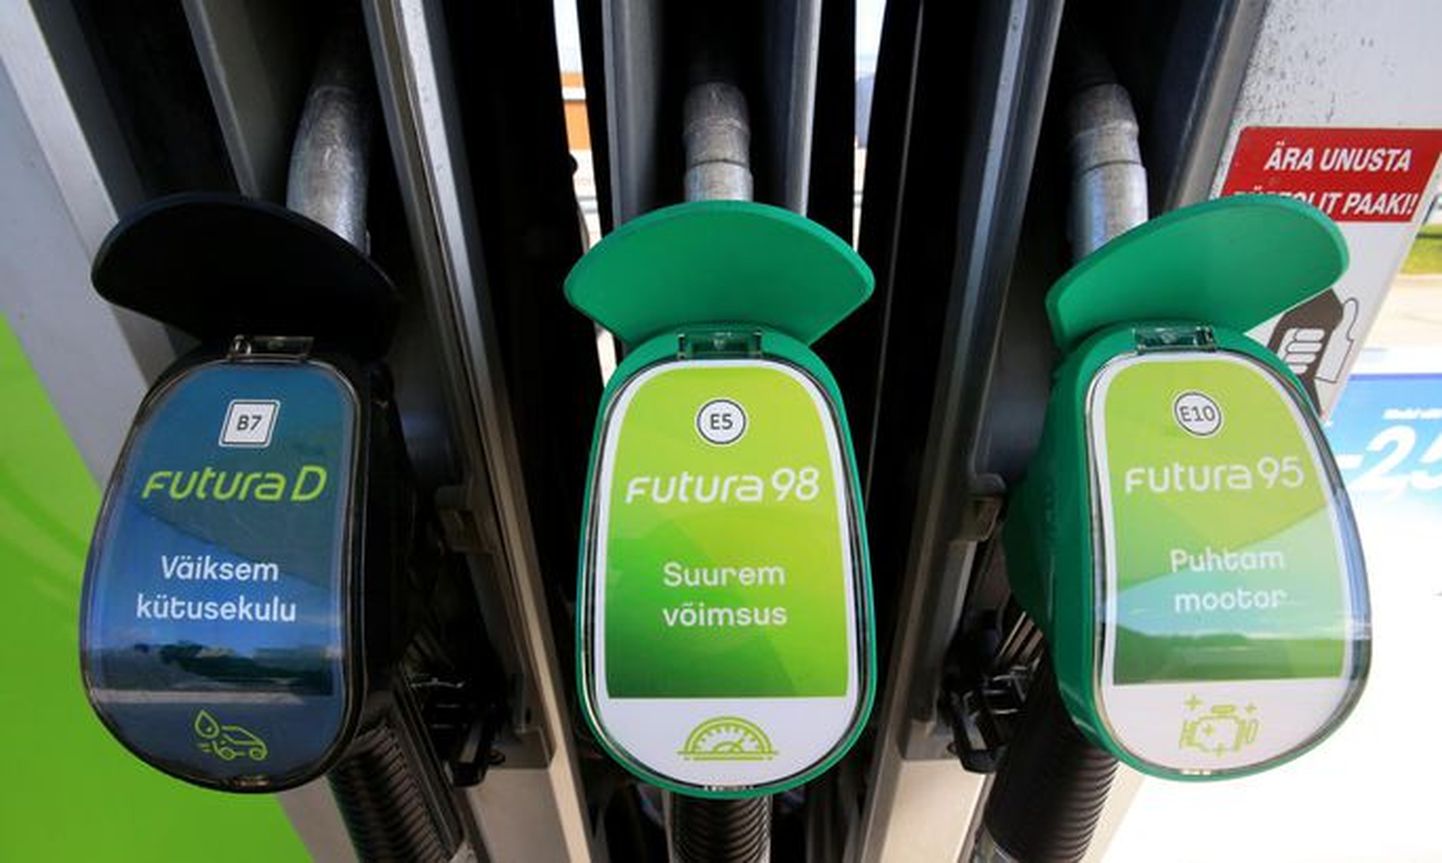 На Neste Eesti и других наших заправках все продаваемое топливо промаркировано согласно постановлению о маркированию жидкого топлива. Маркировка Е5 у 98-бензина может, но не обязана означать добавление биодобавки в топливо.